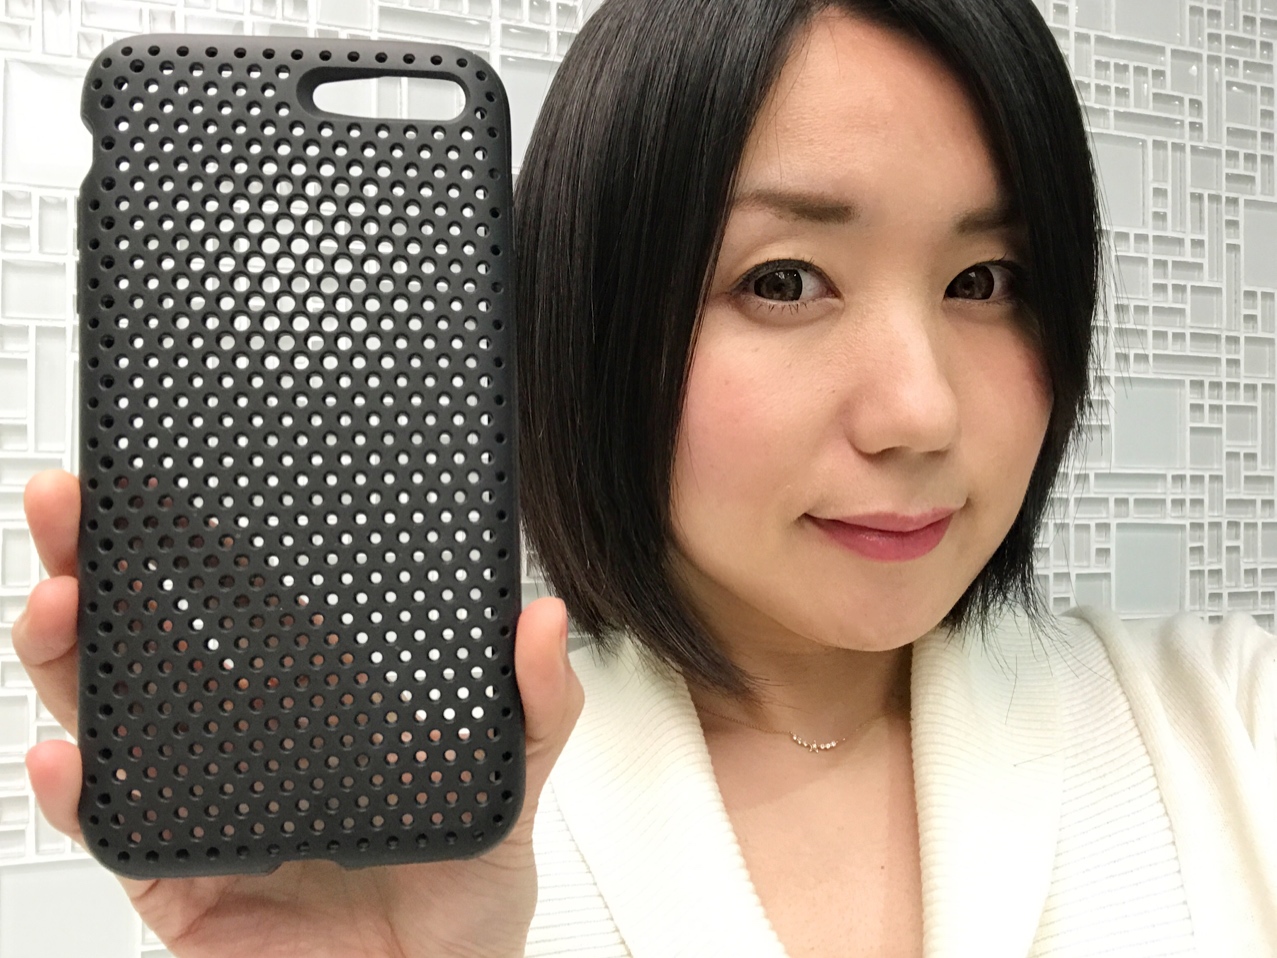 ケースの達人が勧めるiPhone 7 / 7 Plus用ケース厳選4種 ー耐衝撃＆スリムタイプ編ー - Engadget 日本版